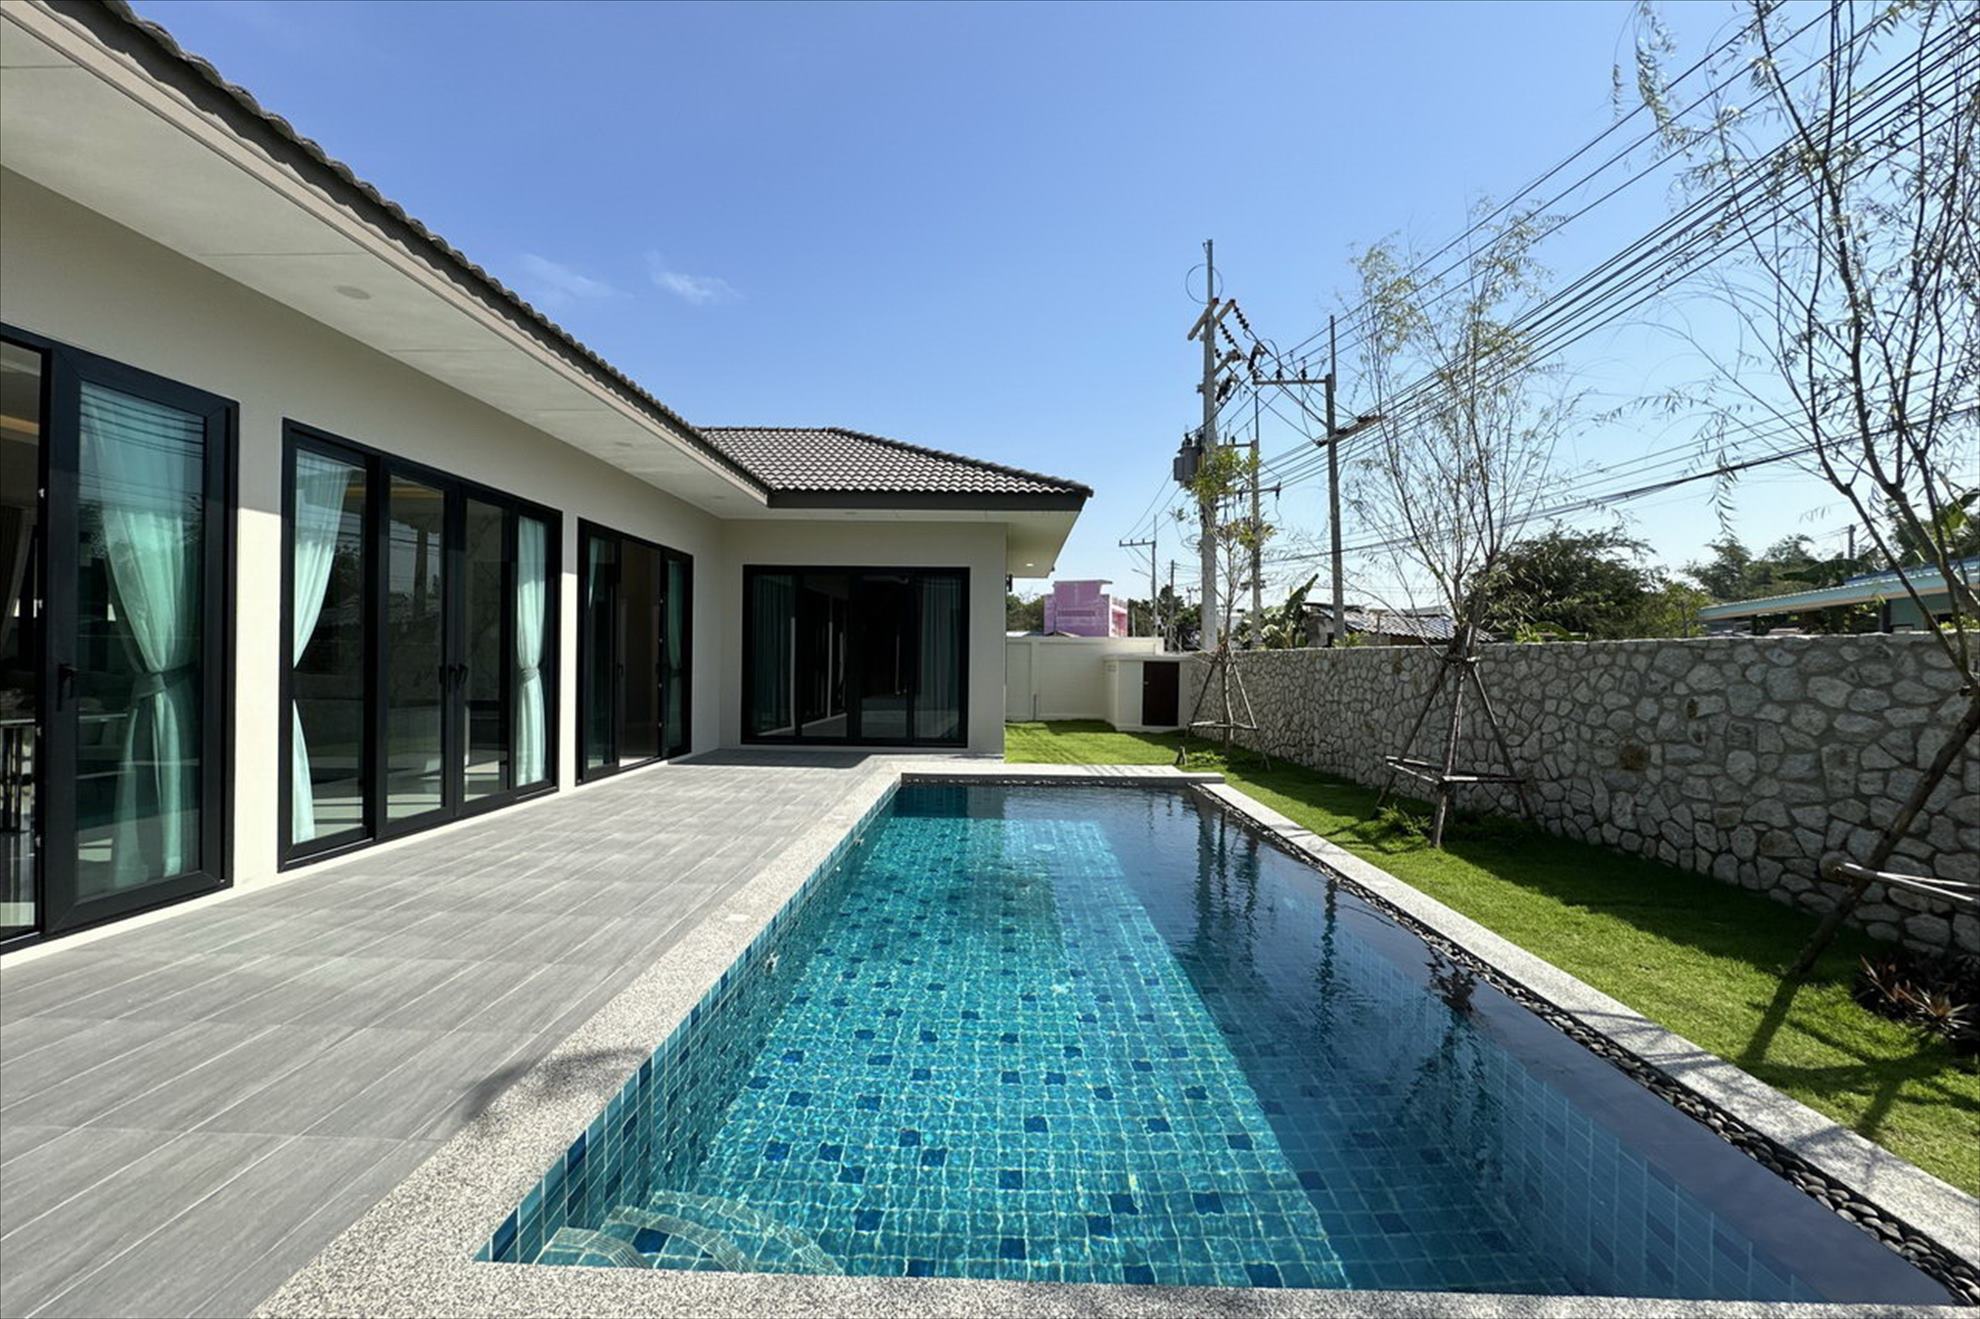 Huay Yai New Garden Ville 8 Pool Villa Neubau Verkauf 8.4 M. THB